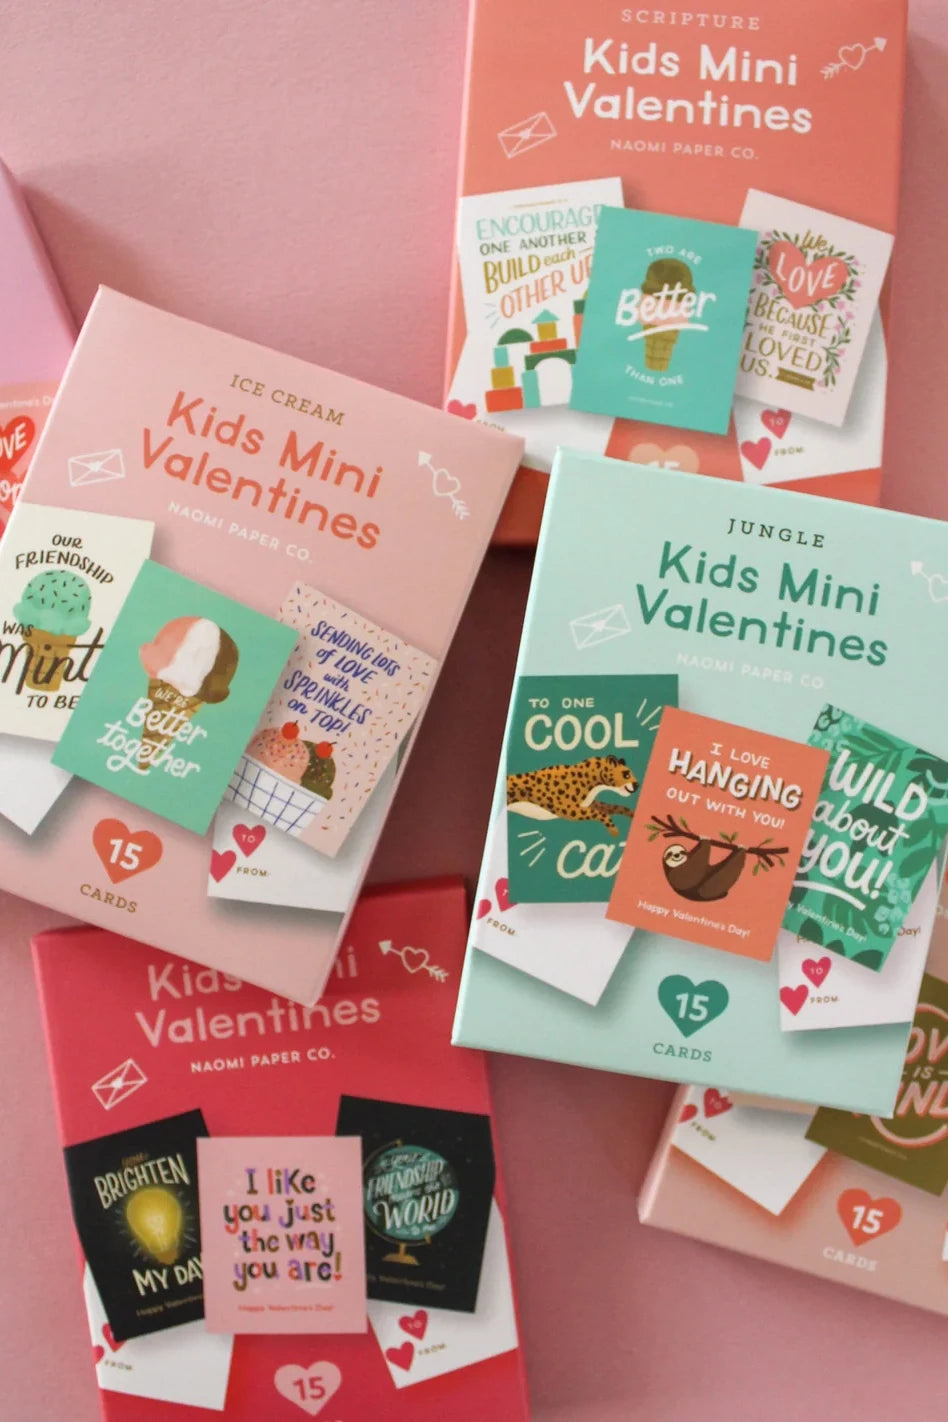 Kids Mini Valentines